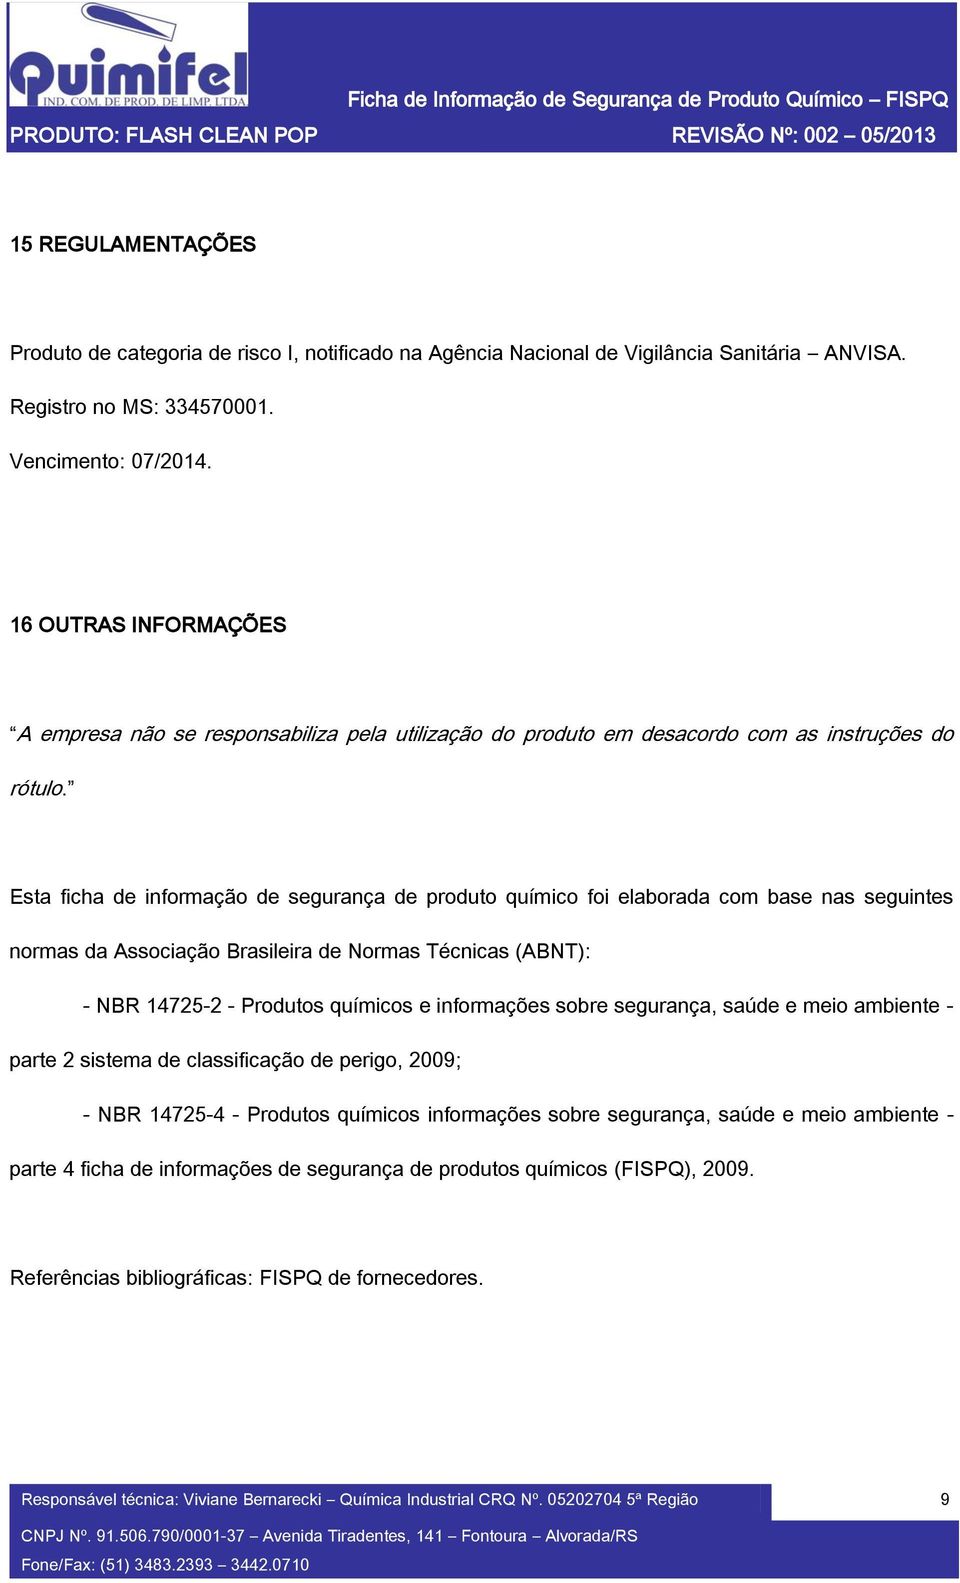 Esta ficha de informação de segurança de produto químico foi elaborada com base nas seguintes normas da Associação Brasileira de Normas Técnicas (ABNT): - NBR 14725-2 - Produtos químicos e